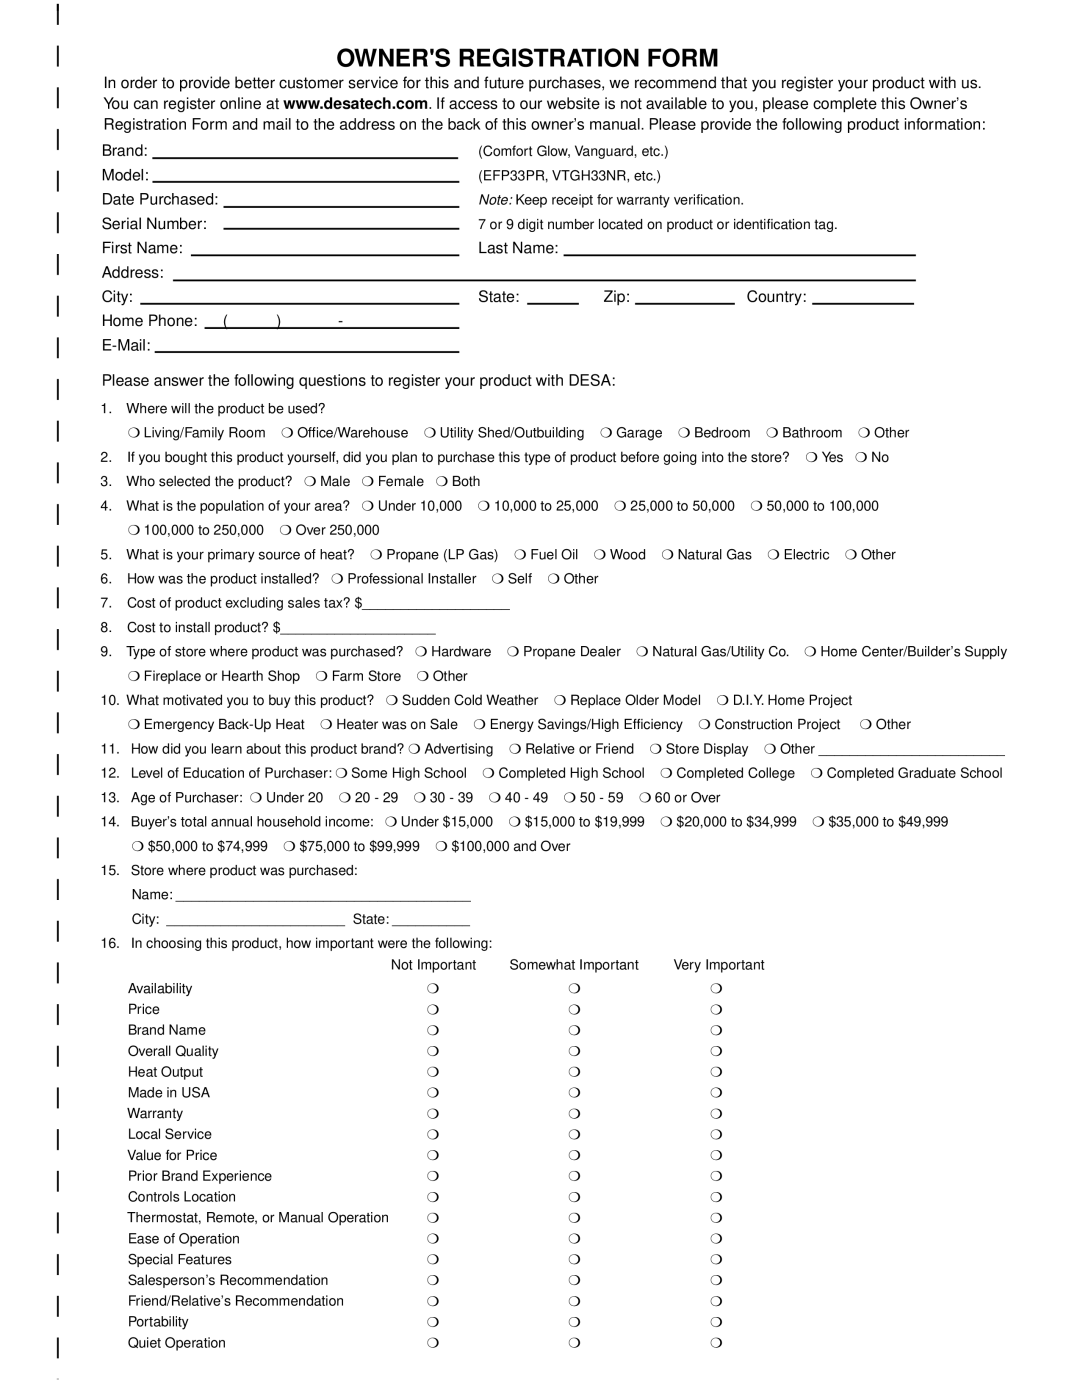 Desa V3610ST manual Owners Registration Form 